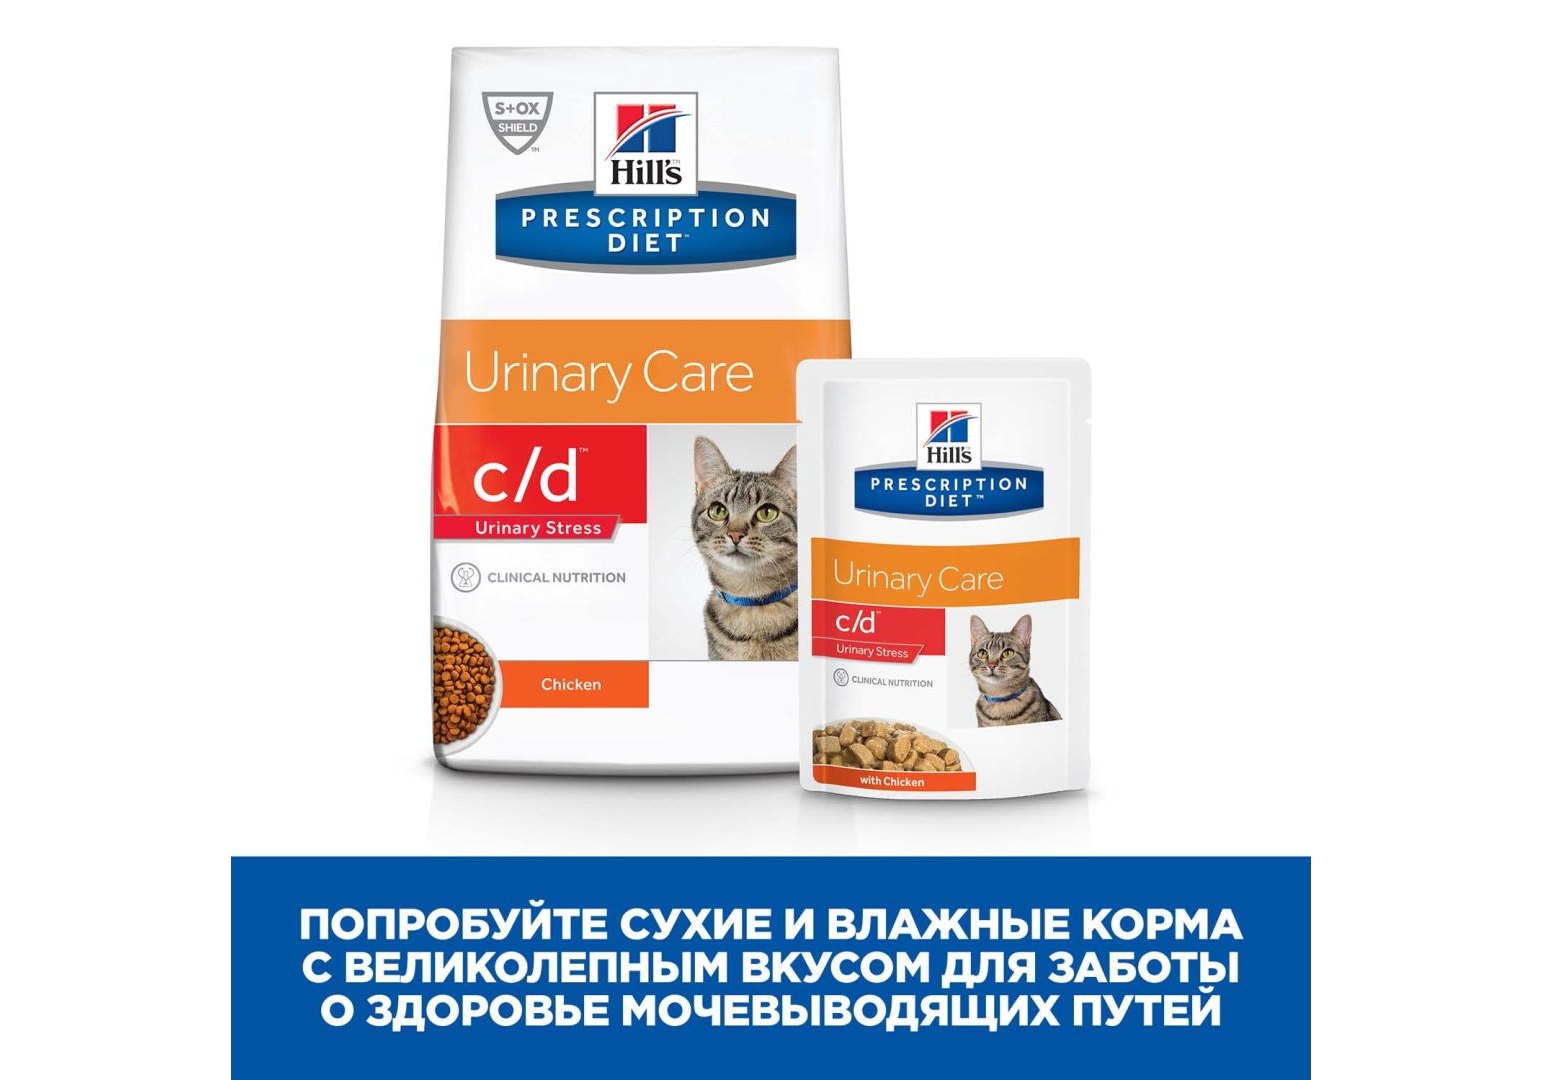 Hills Prescription Diet c\d Stress Urinary Care / Лечебный корм Хиллс для  кошек при Цистите Курица 1,5 кг купить в Москве по низкой цене 2 160₽ |  интернет-магазин ZooMag.ru